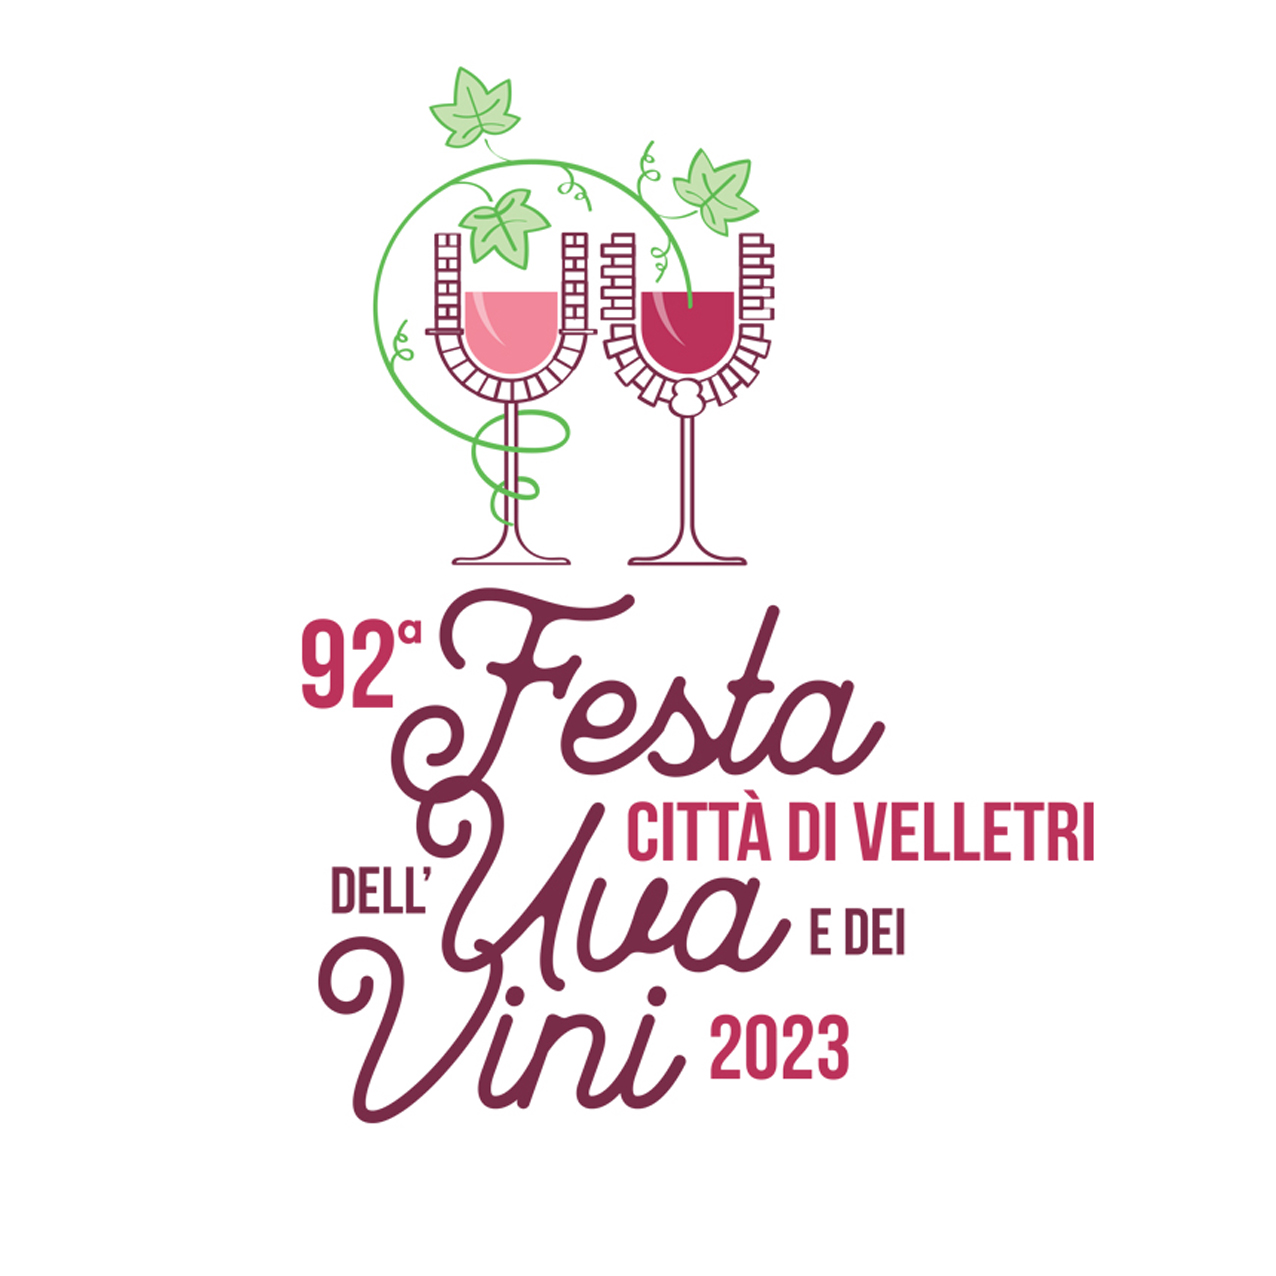 Festa dell’Uva e dei Vini: dal logo ufficiale alle iniziative in tutta la città, attesa per un week end da vivere a Velletri